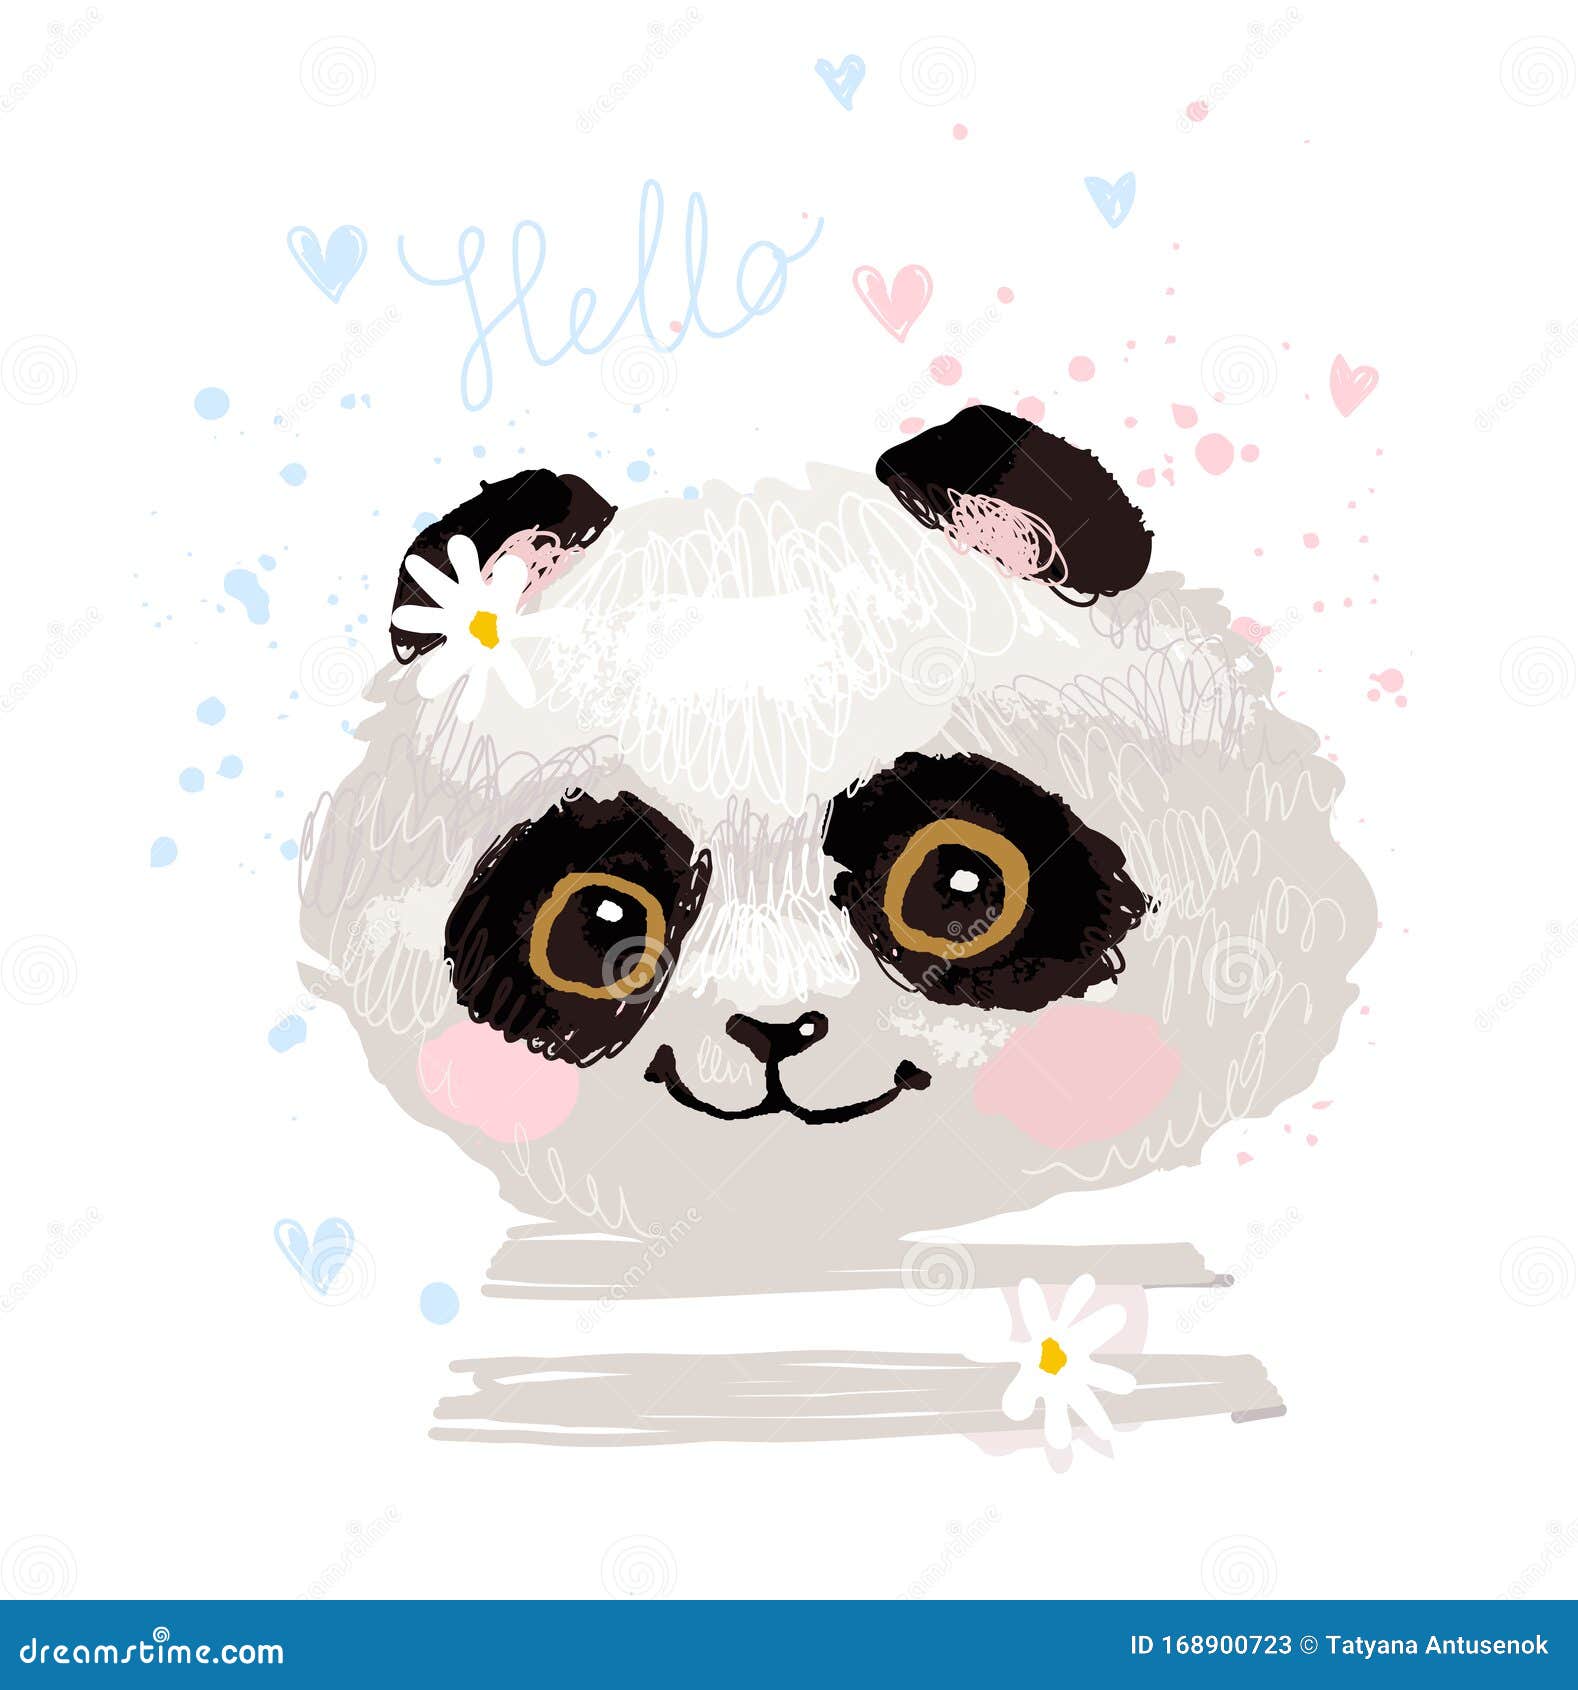 Desenho De Panda Fofo Para Decoração De Roupas Infantis E Cartões